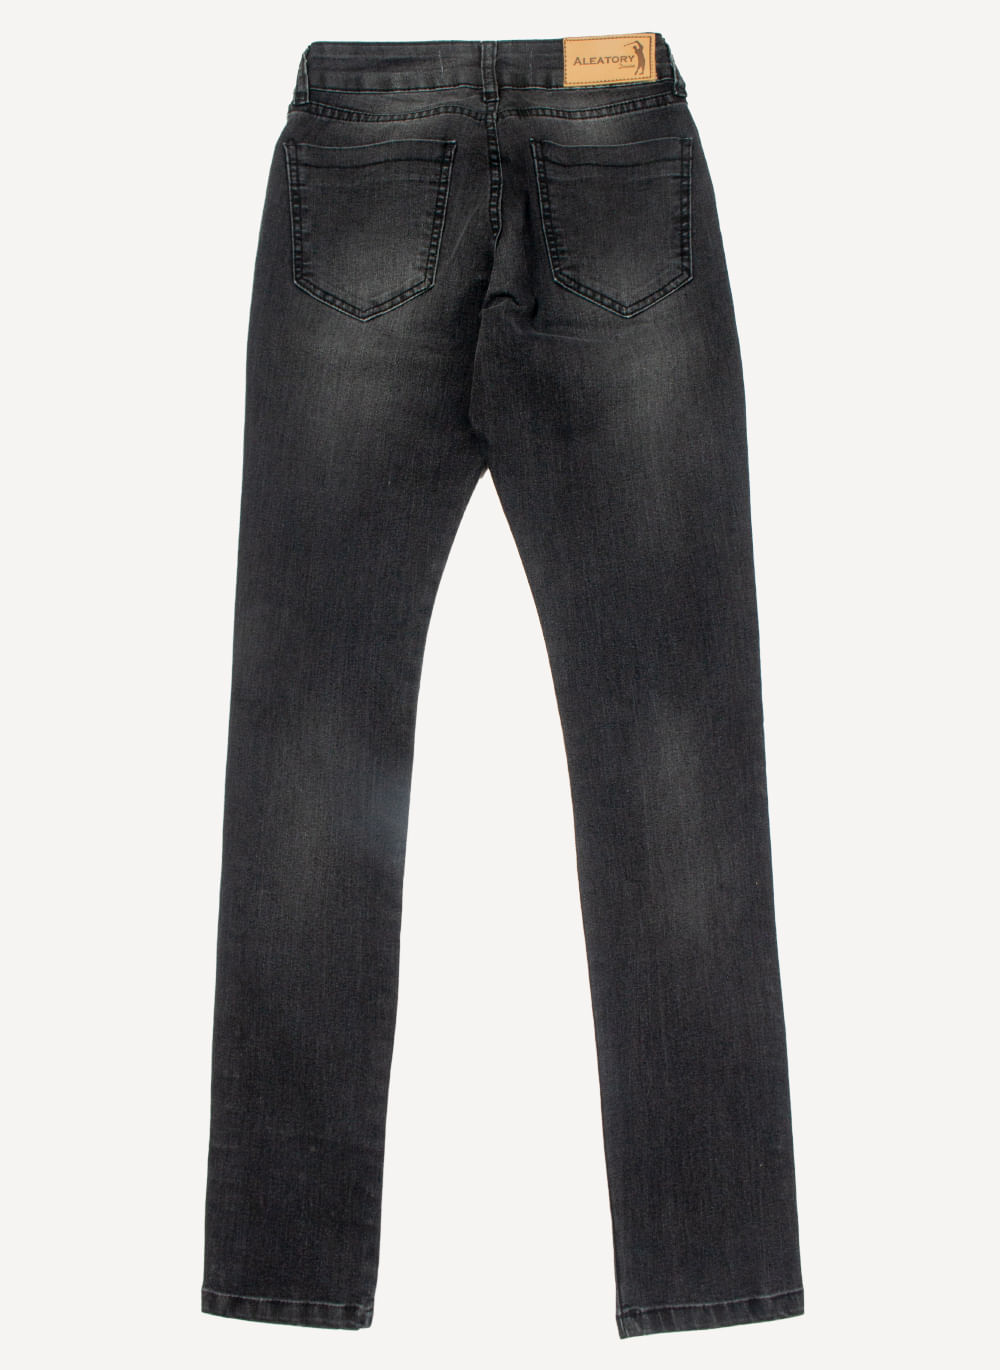 calca-jeans-feminina-aleatory-all-black-still-2-